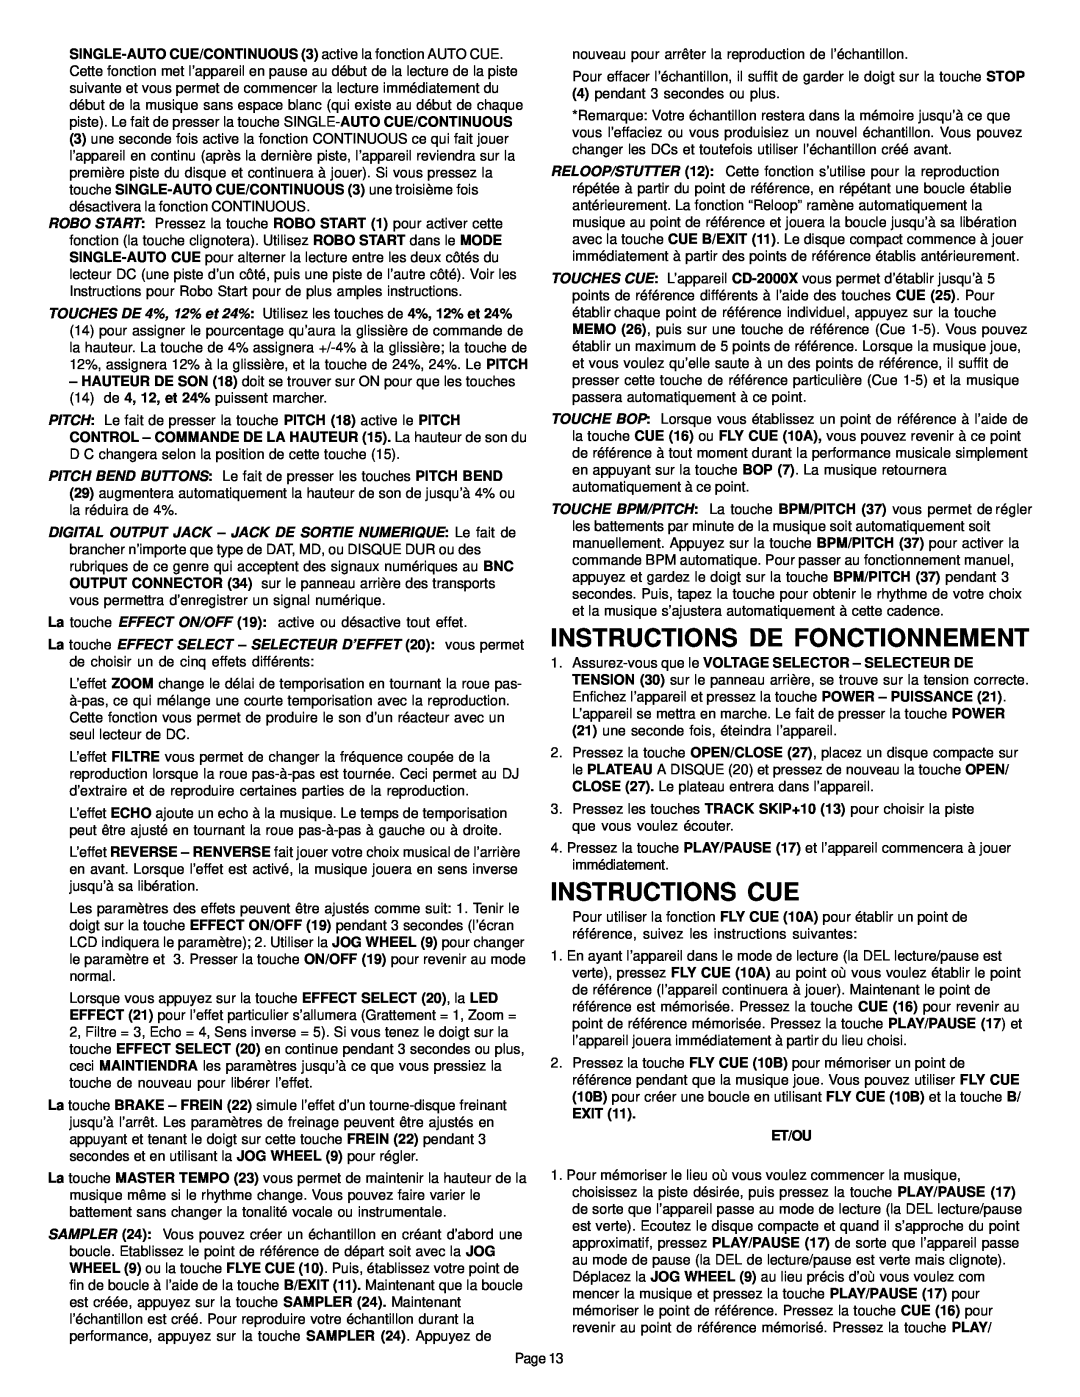 Gemini CD-2000X manual Instructions De Fonctionnement, Instructions Cue 